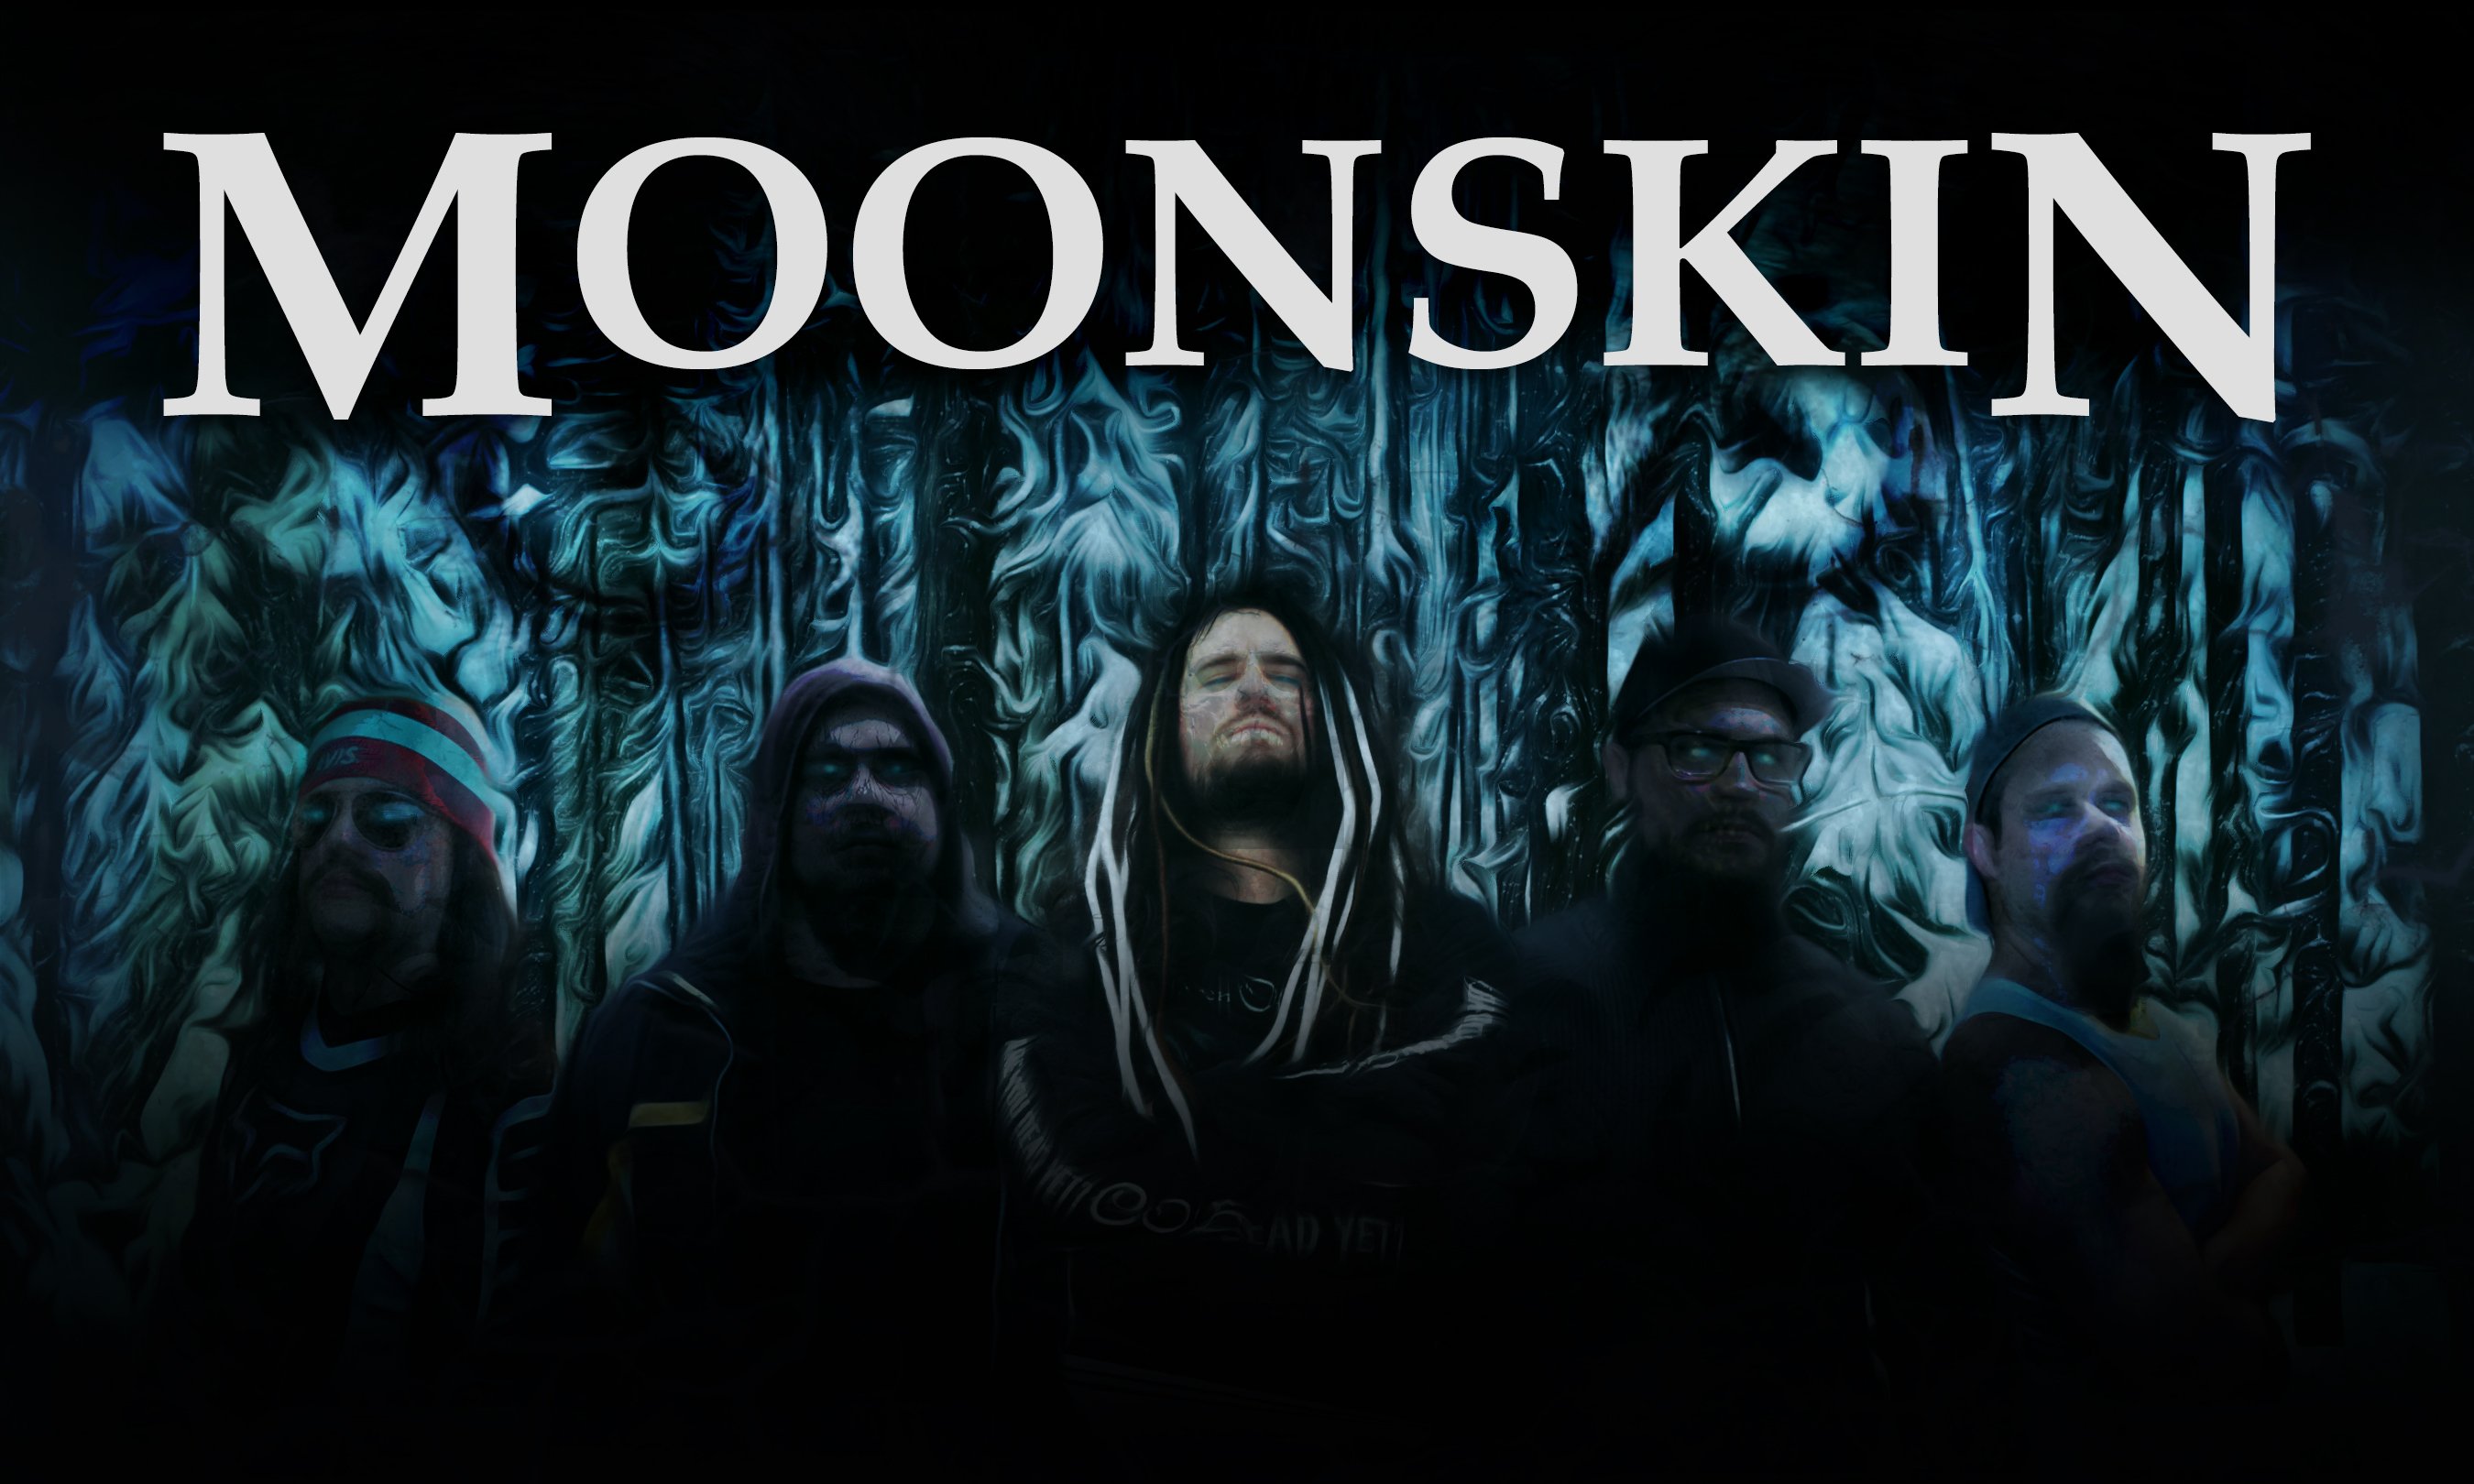 Moonskin band lunar ascendance release